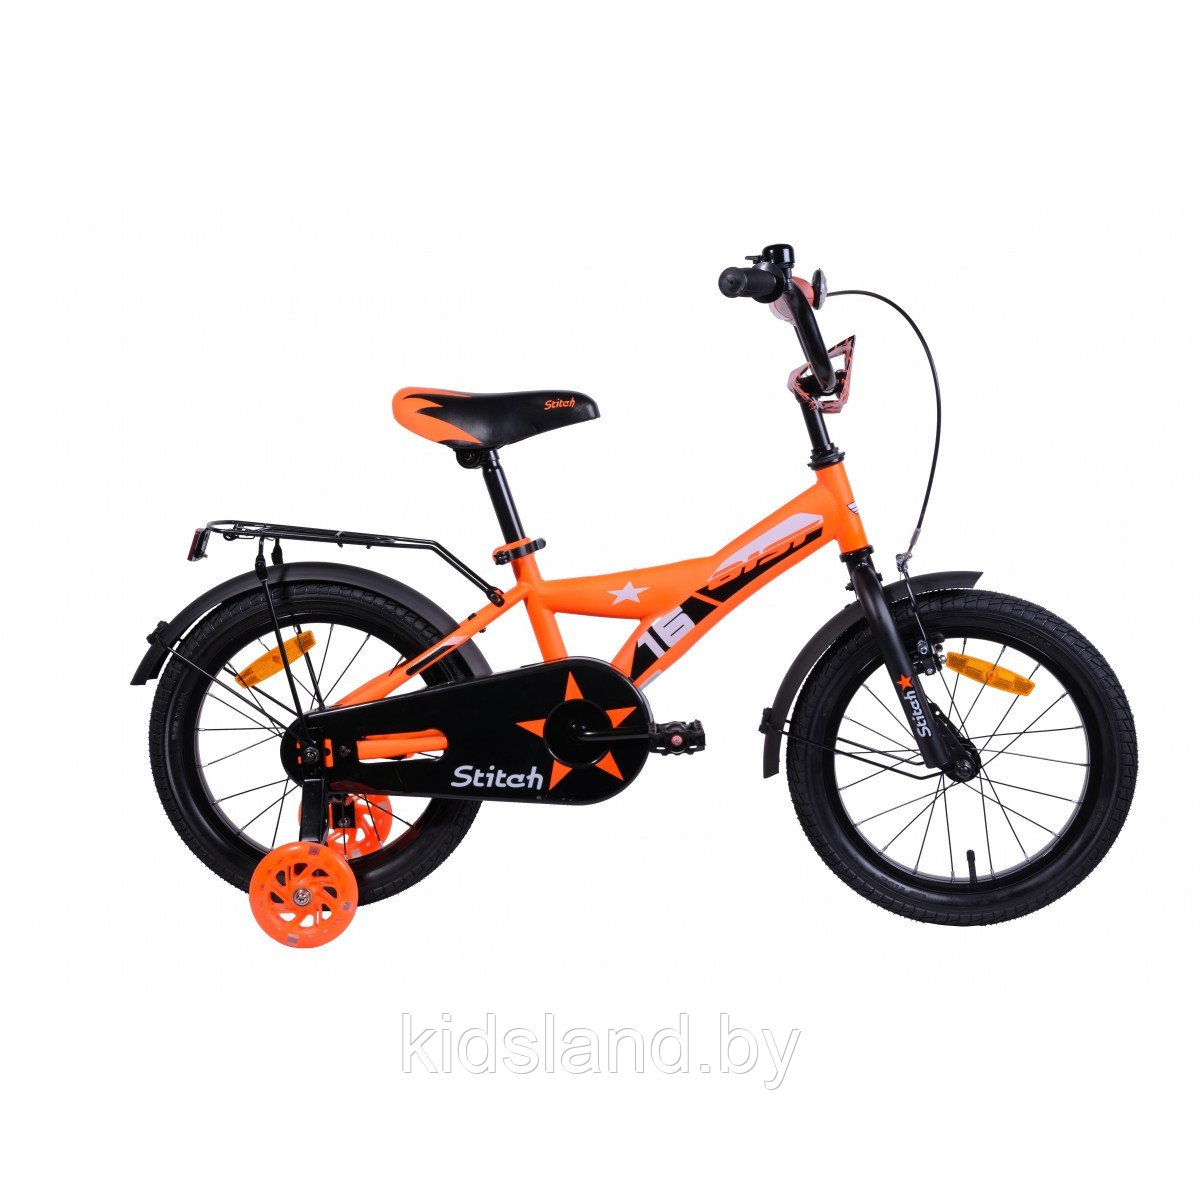 Детский велосипед Aist Stitch 16"  (оранжевый)